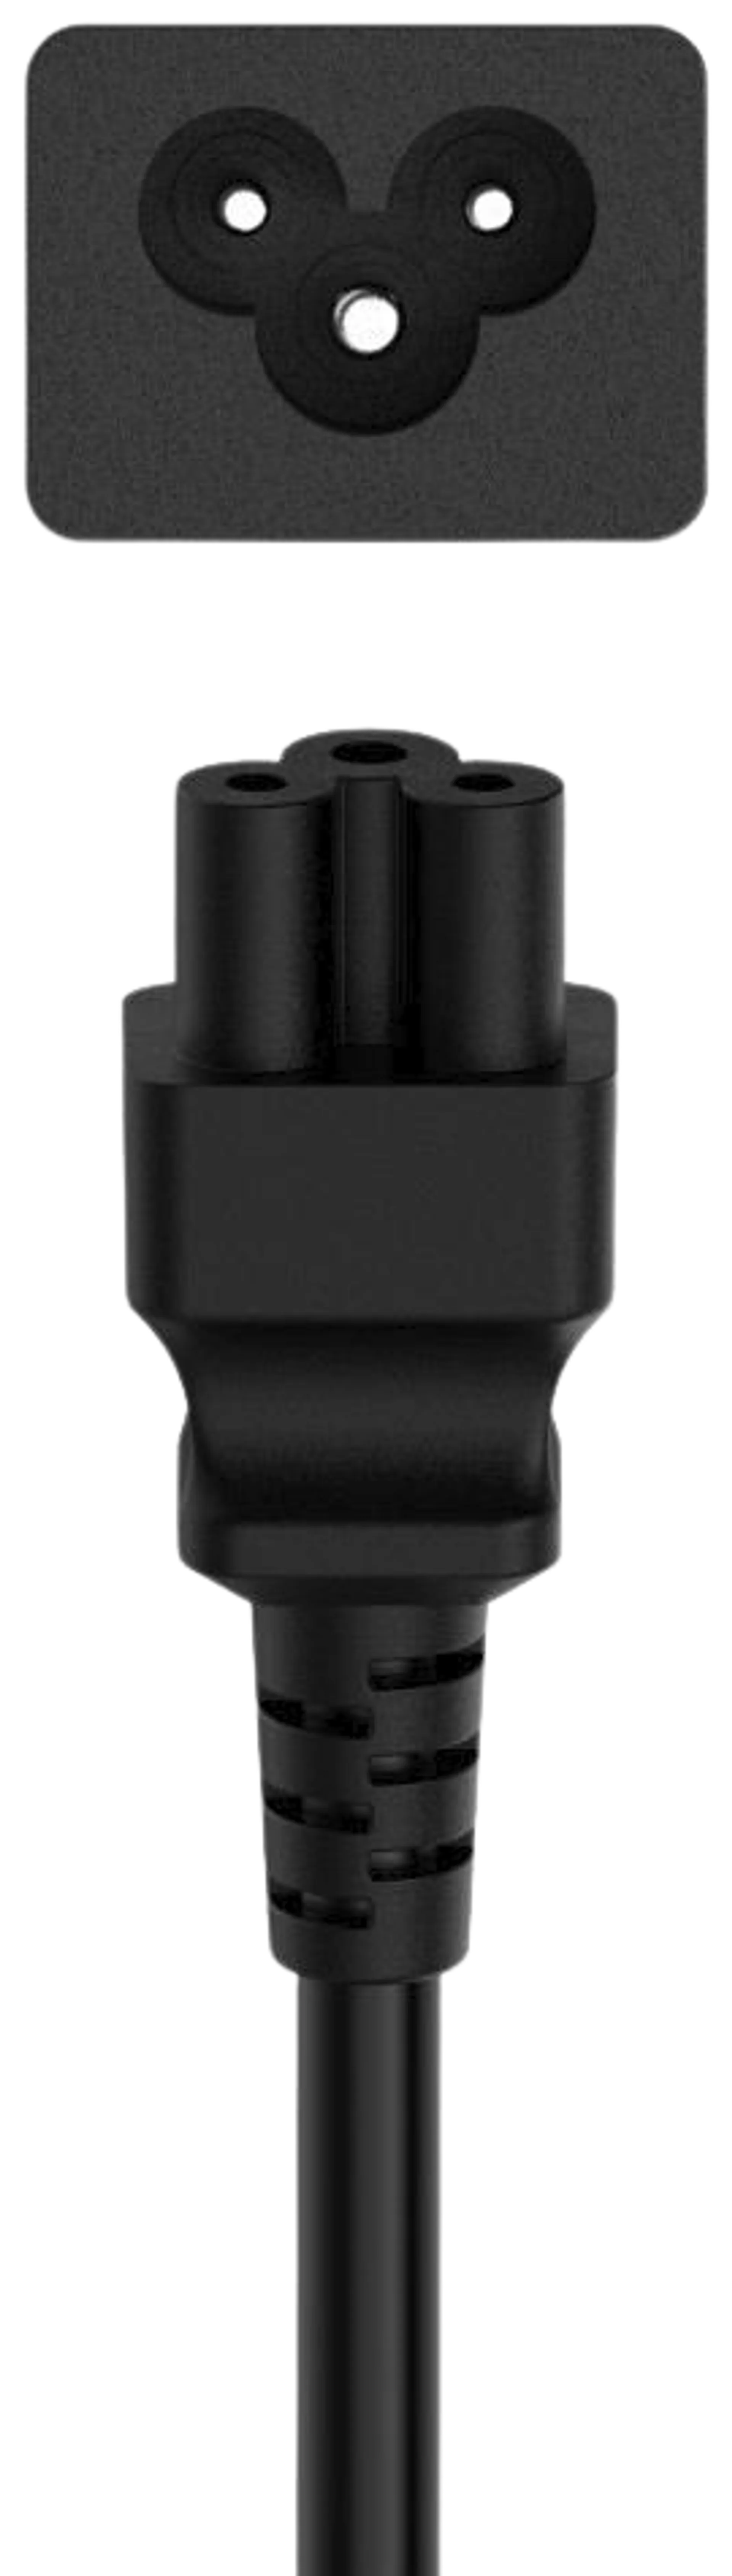 Hama Laitevirtajohto, CEE 7/7 (Type E ja F/Schuko) - 3-pin IEC5, 1,5 m, musta - 2